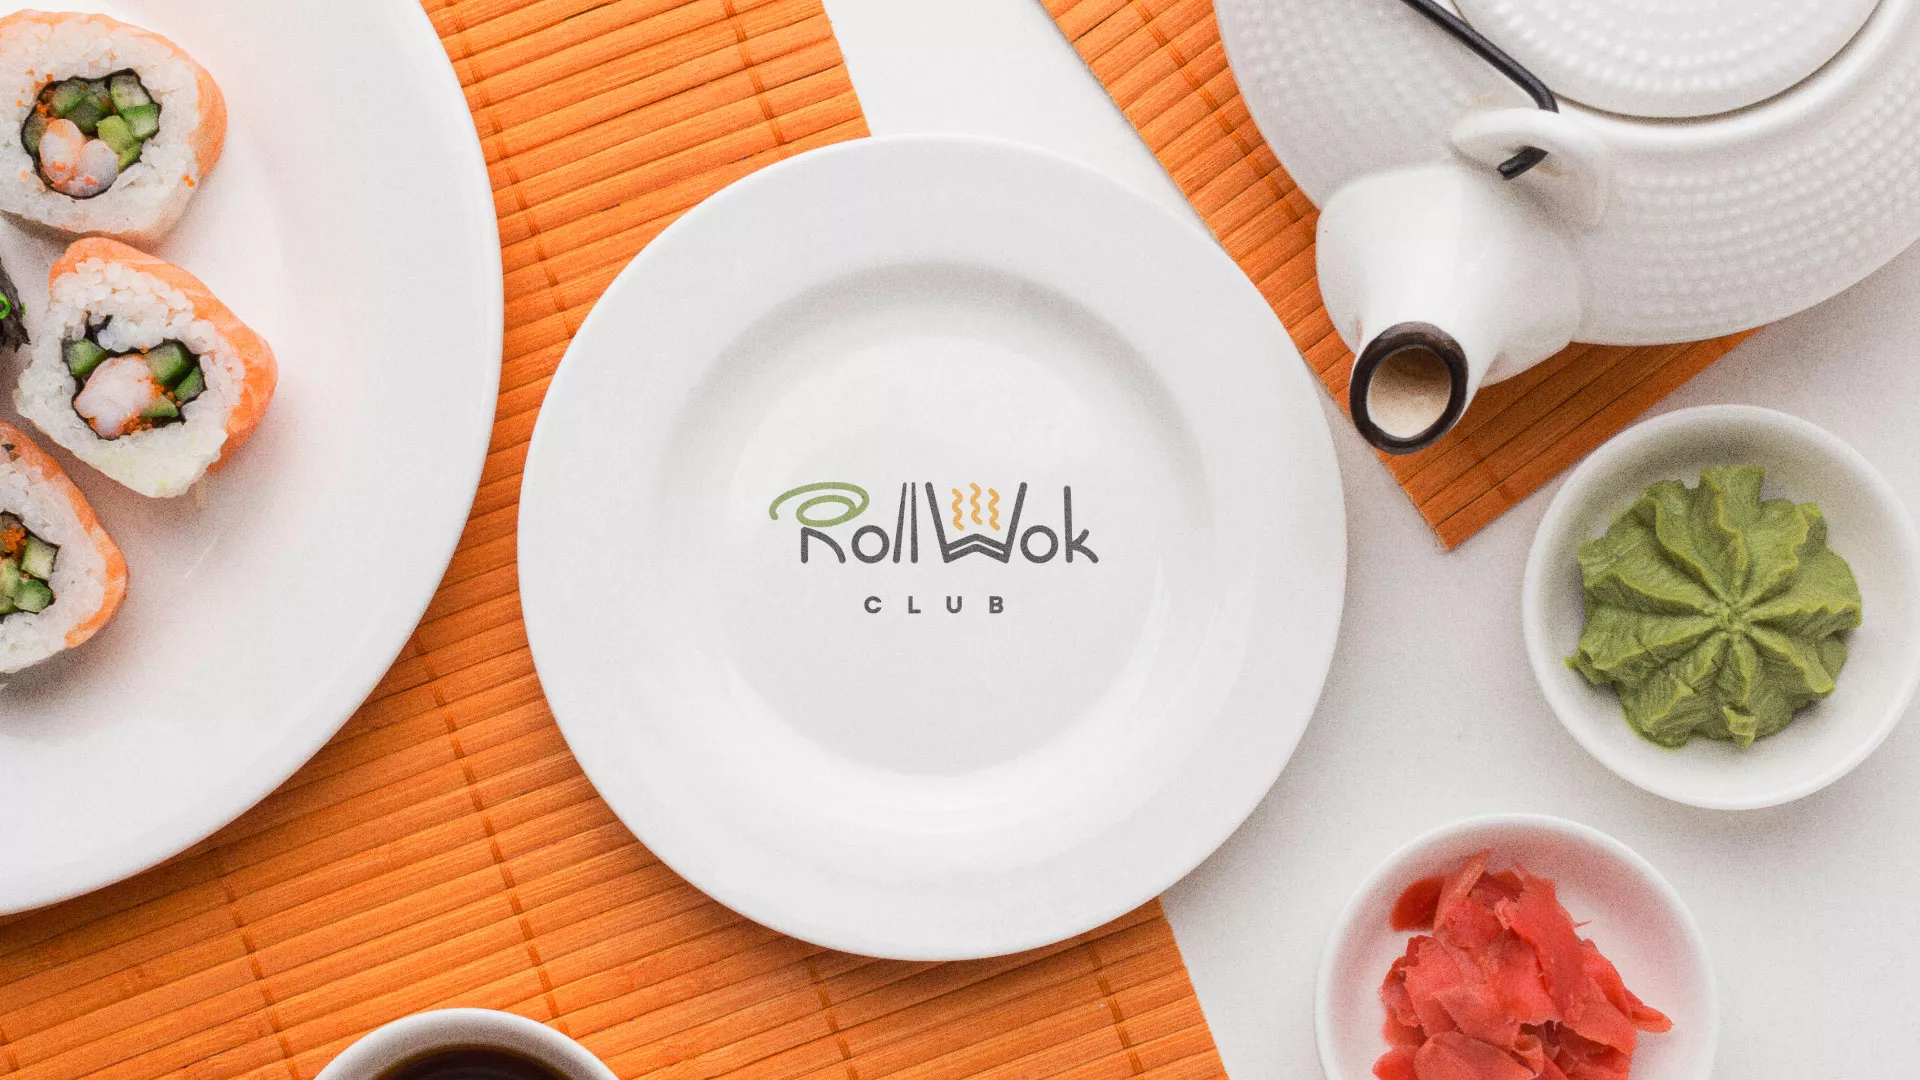 Разработка логотипа и фирменного стиля суши-бара «Roll Wok Club» в Чусовом